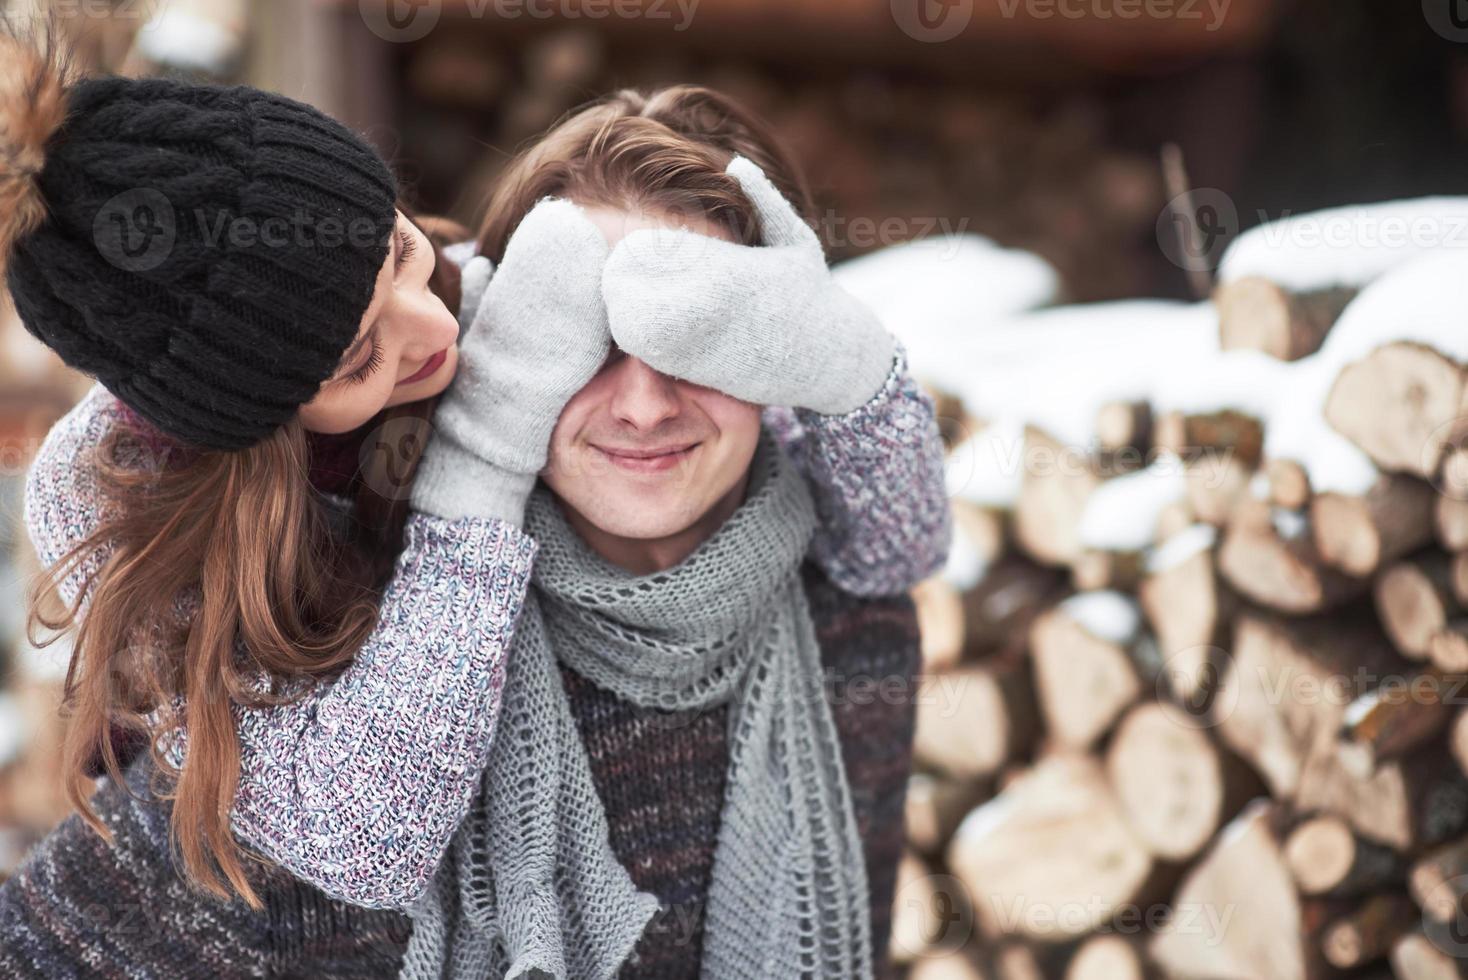 unga glada par i en stuga i romantisk scape på vintern foto